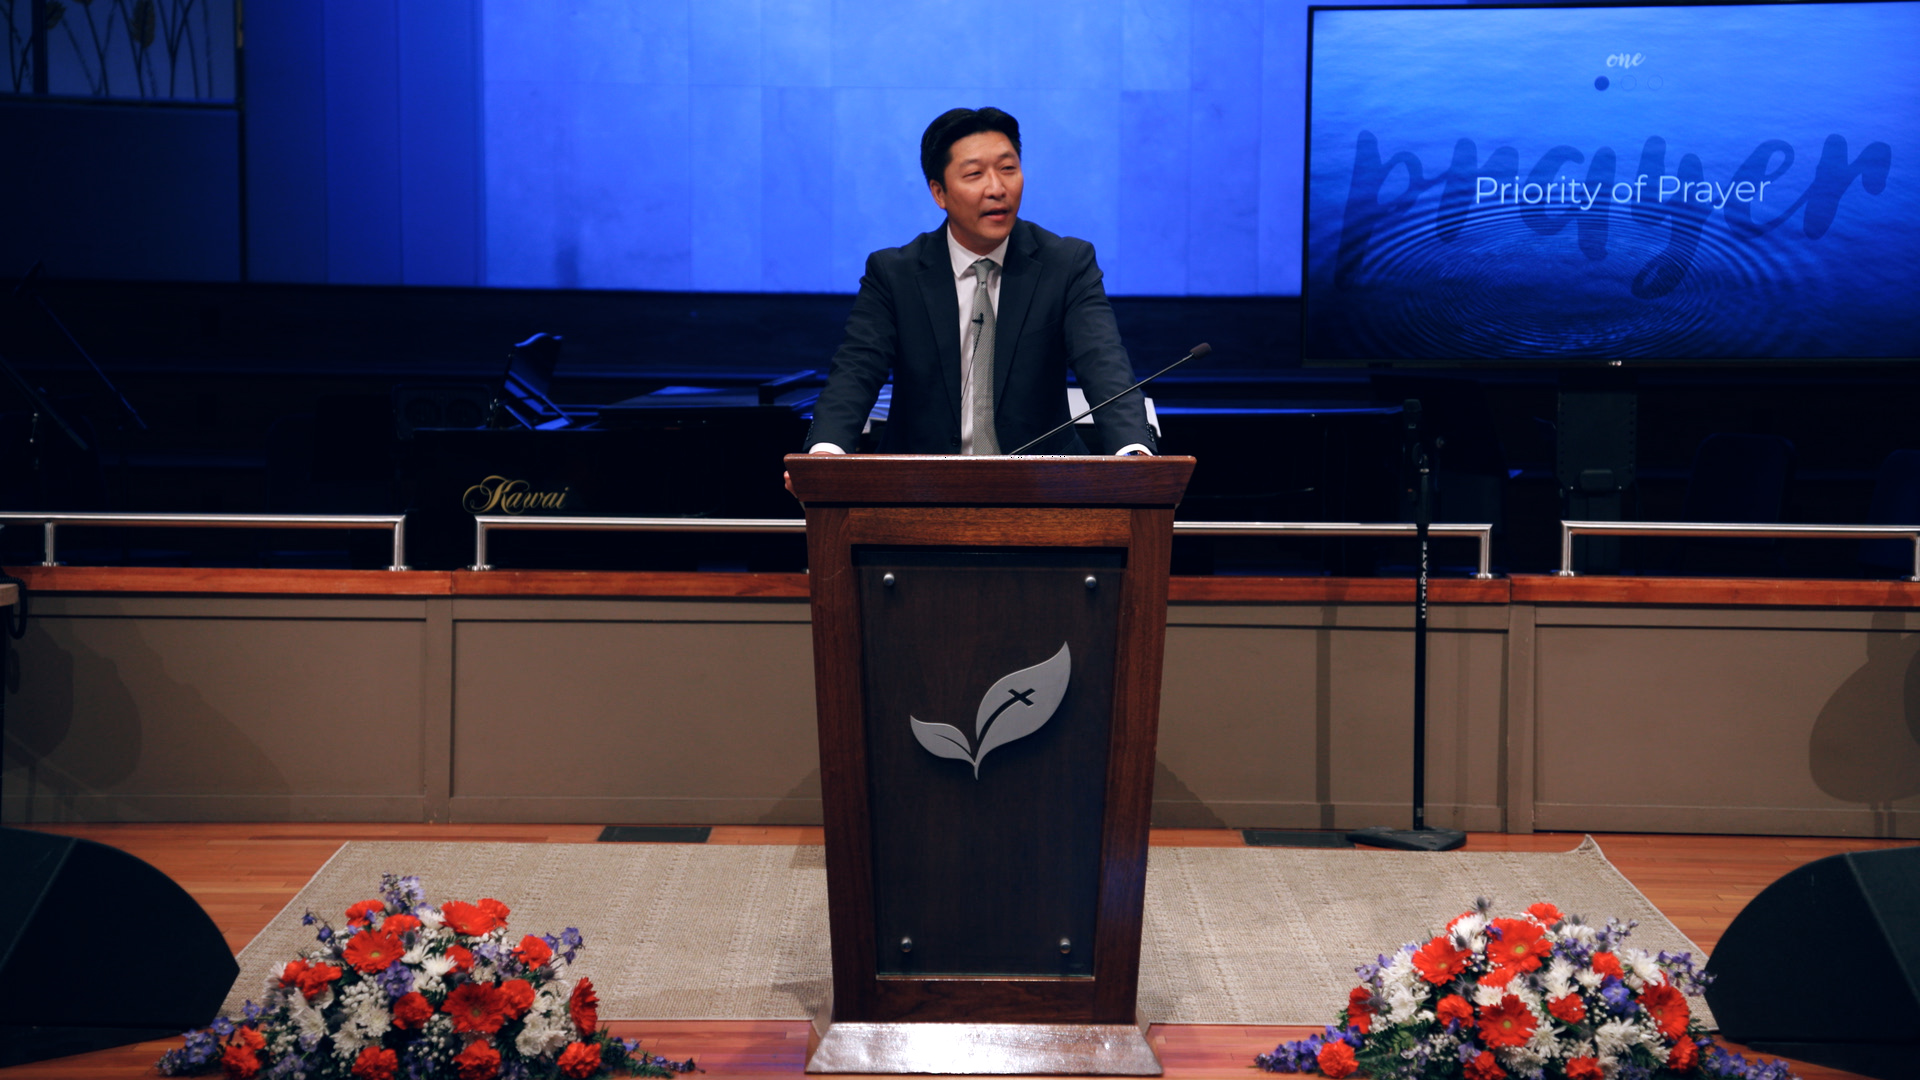 Paul Choi: The Peace of God